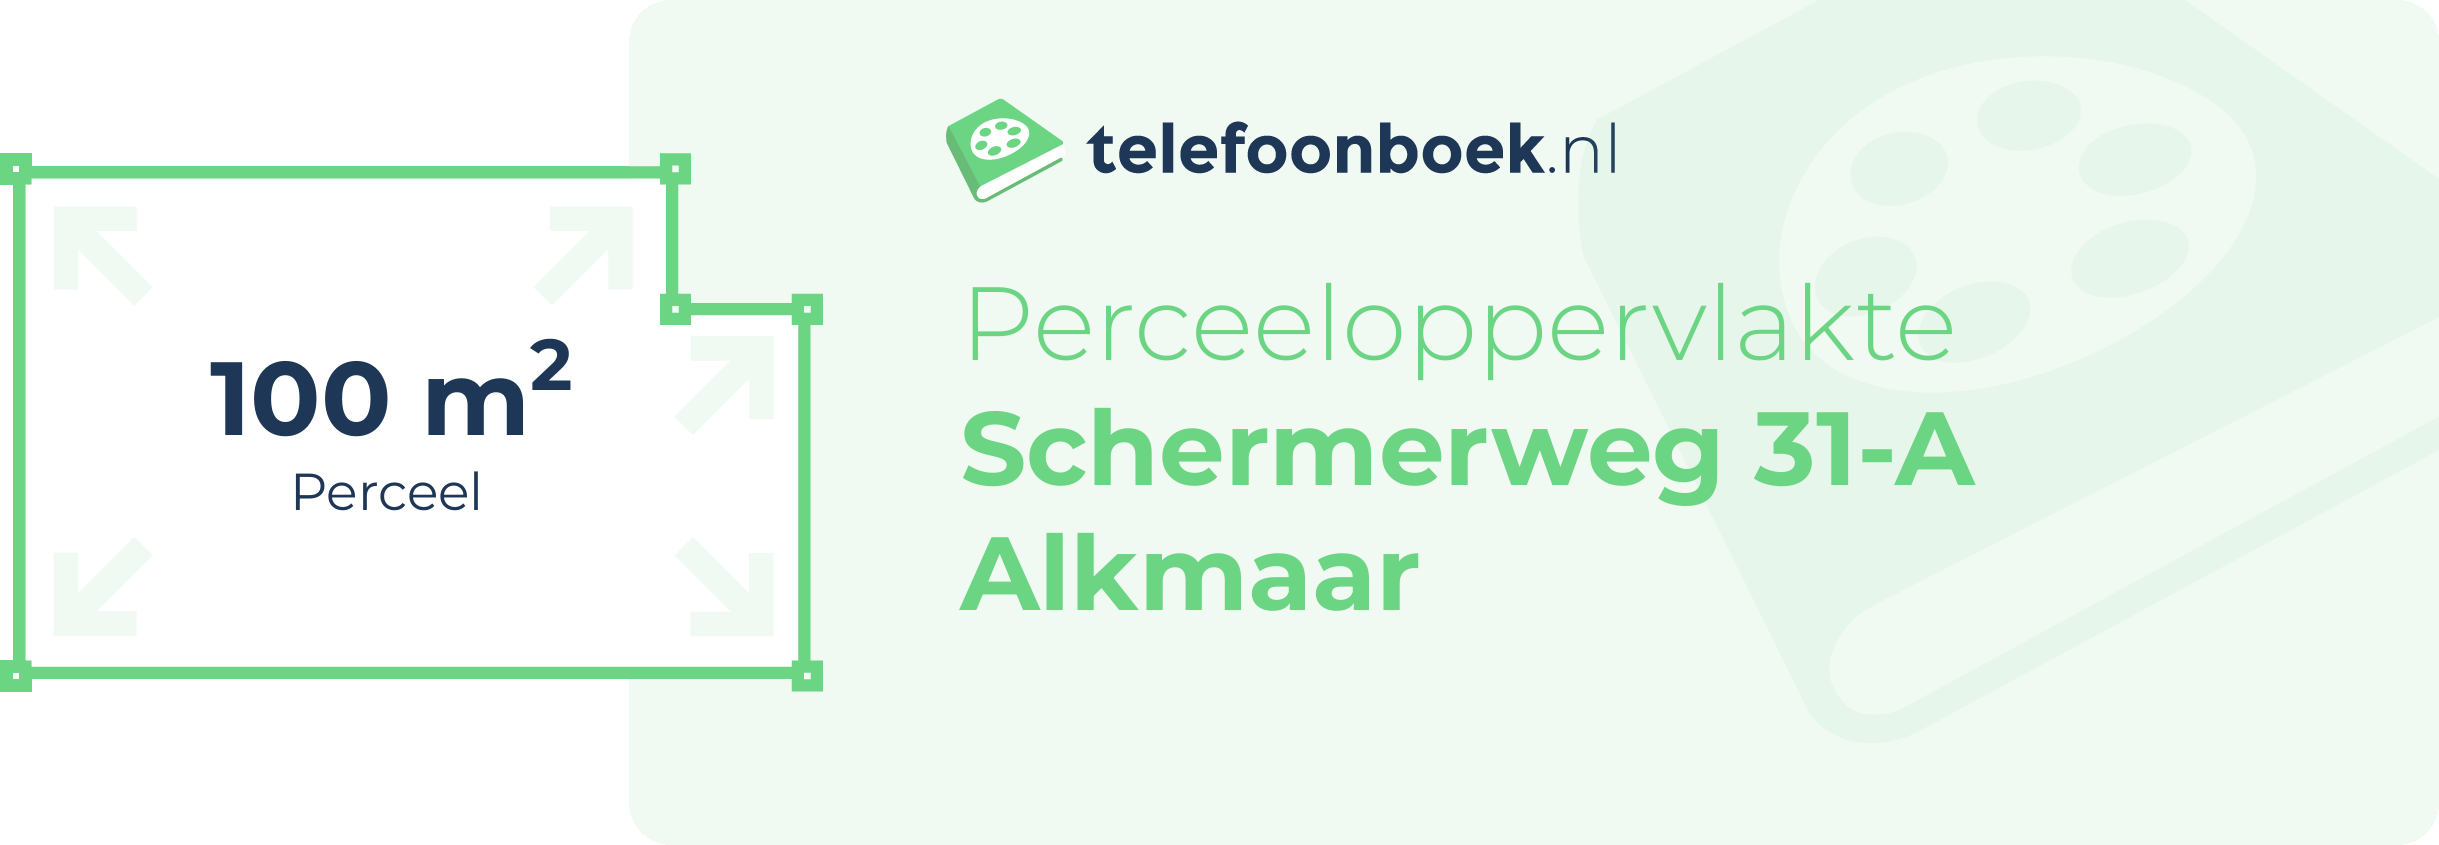 Perceeloppervlakte Schermerweg 31-A Alkmaar